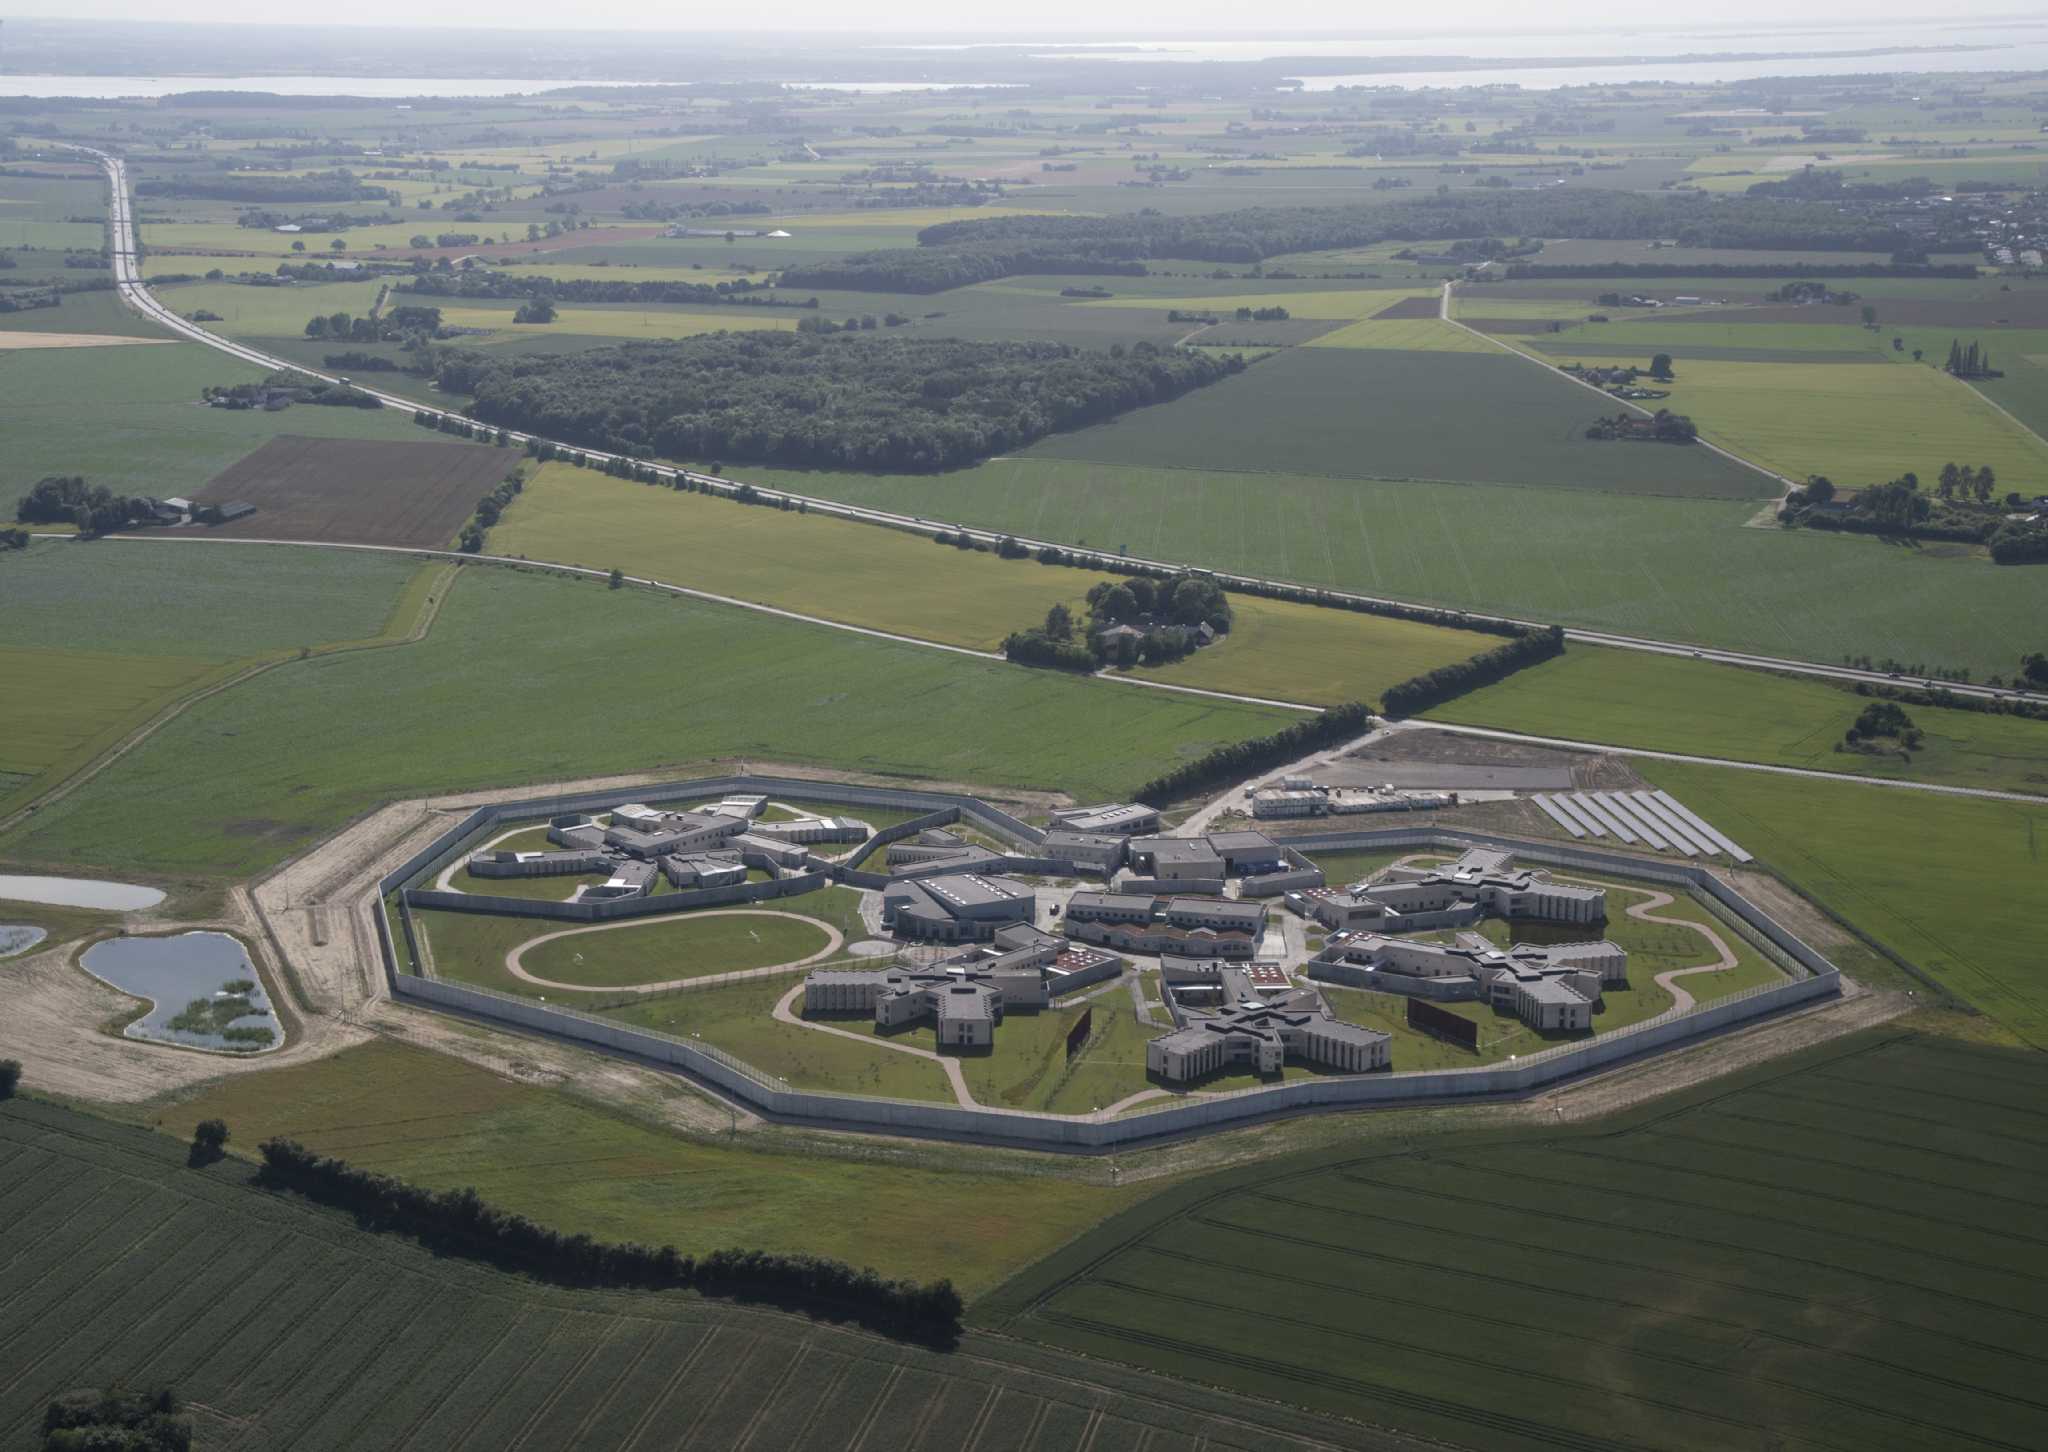 Inauguration of Denmark's new state prison - C.F. Møller